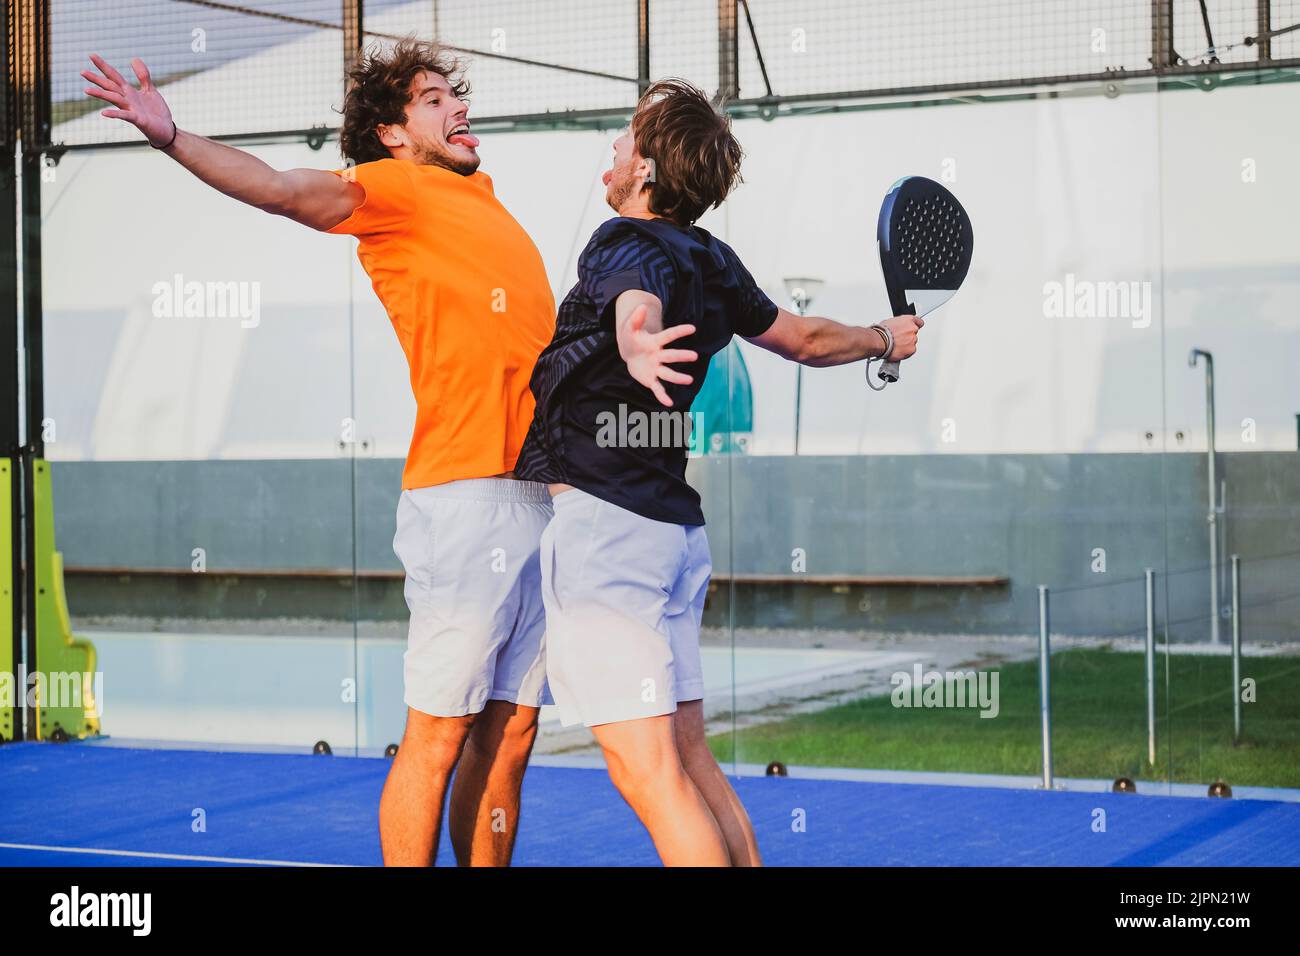 Portrait de deux sportifs souriants posant sur un terrain de padel en plein air avec des raquettes - les joueurs de padel embrassant après avoir gagné un match de padel Banque D'Images